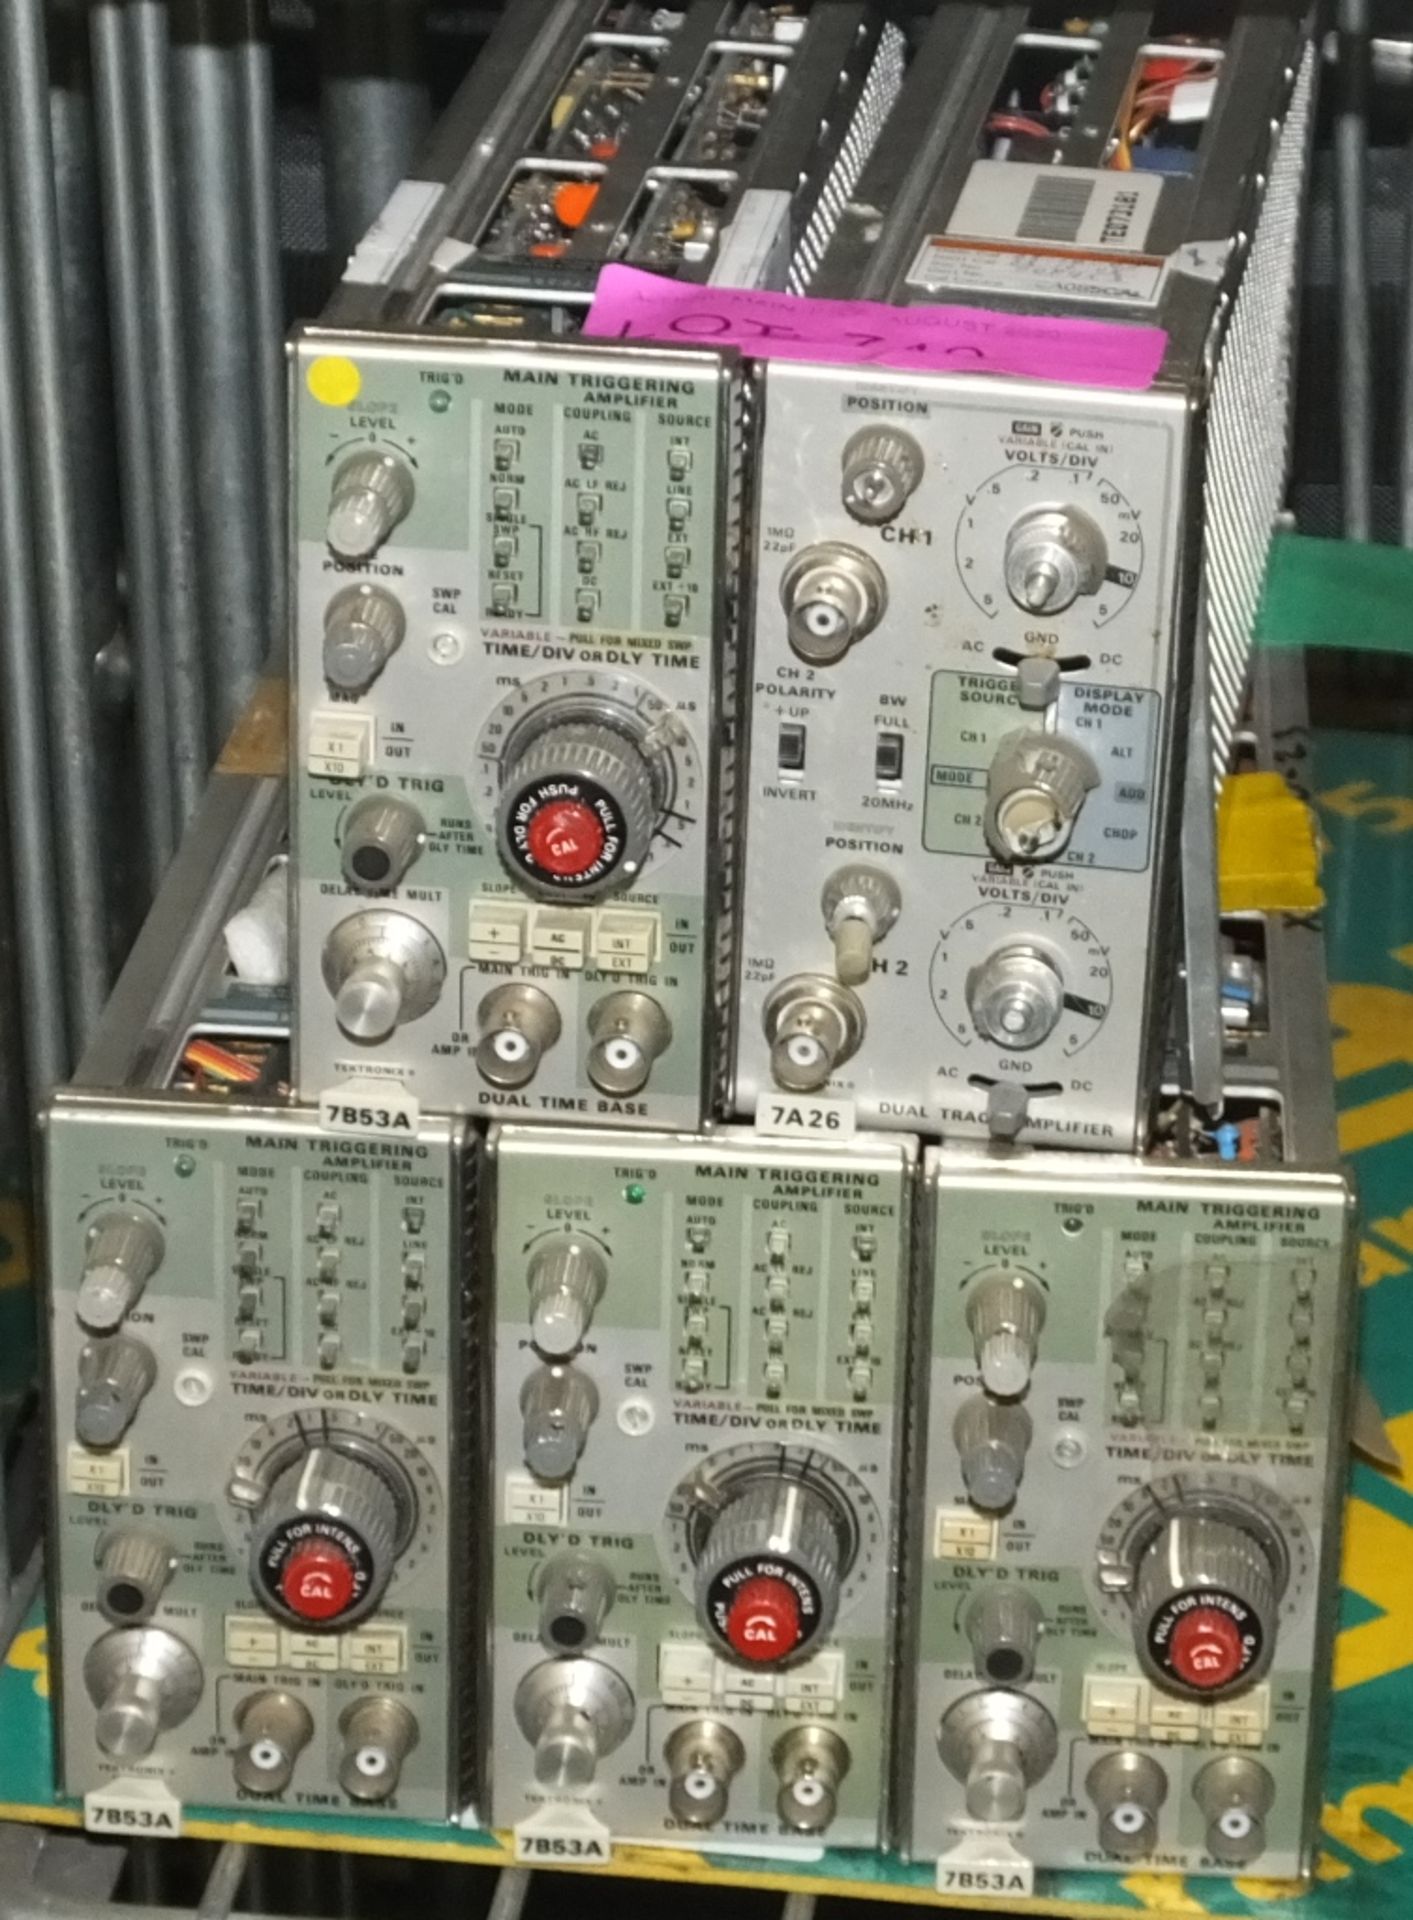 5x Tektronix plug in modules - 2x 7B53A, 2x 7B53A, 1x 7A26